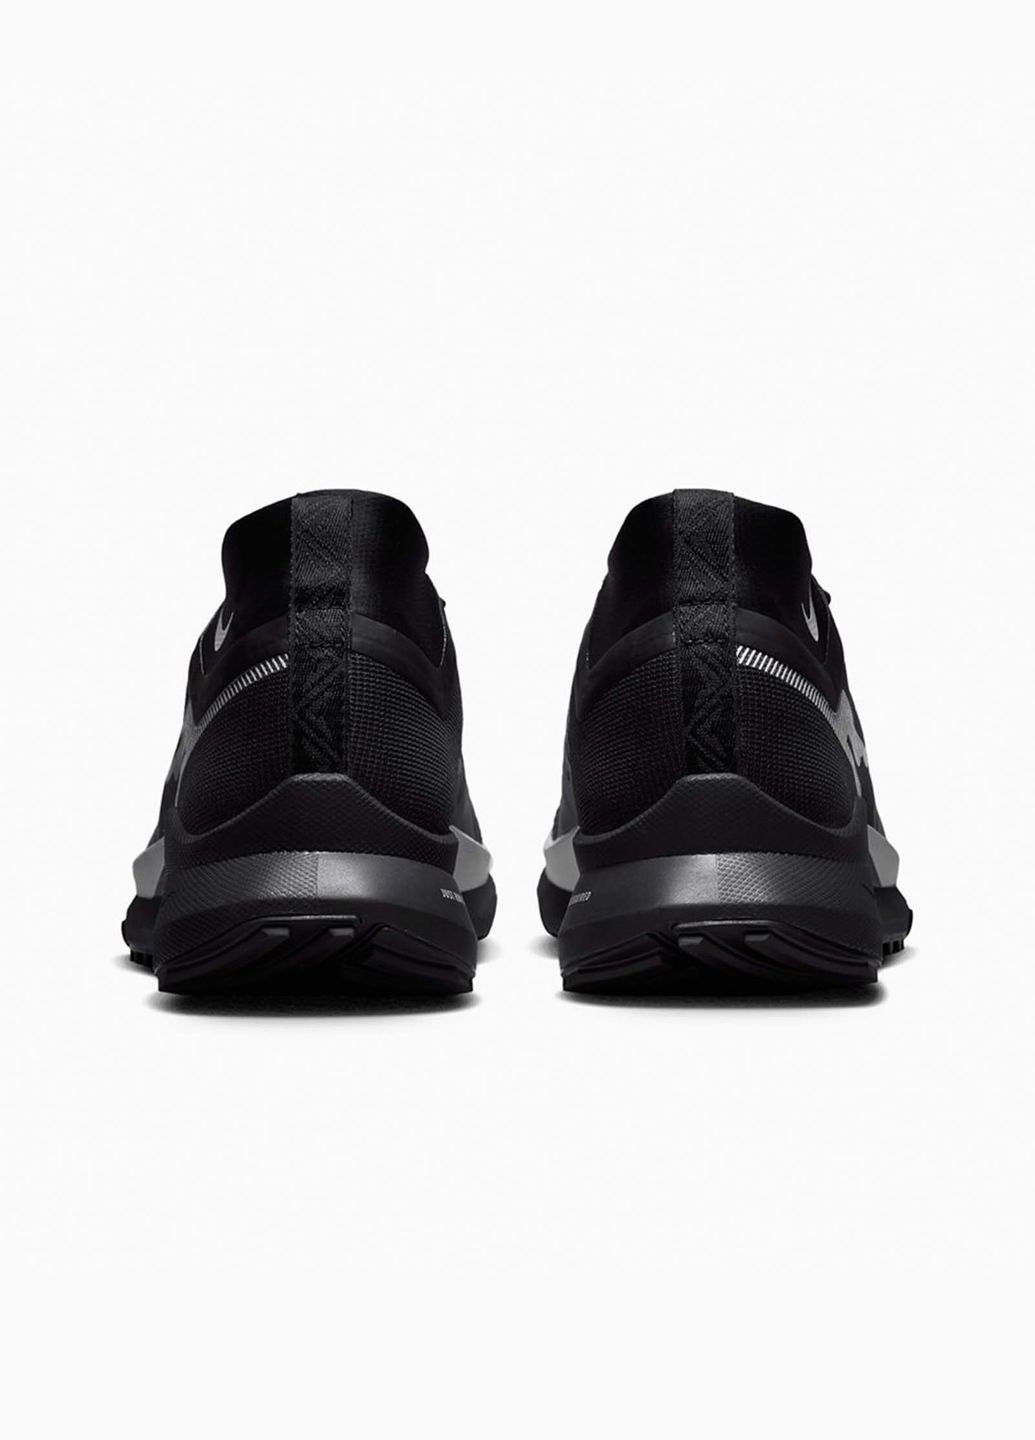 Сірі всесезон кросівки чоловічі react pegasus 4 gore-tex dj7926-001 весна-осінь текстиль мембрана чорні Nike